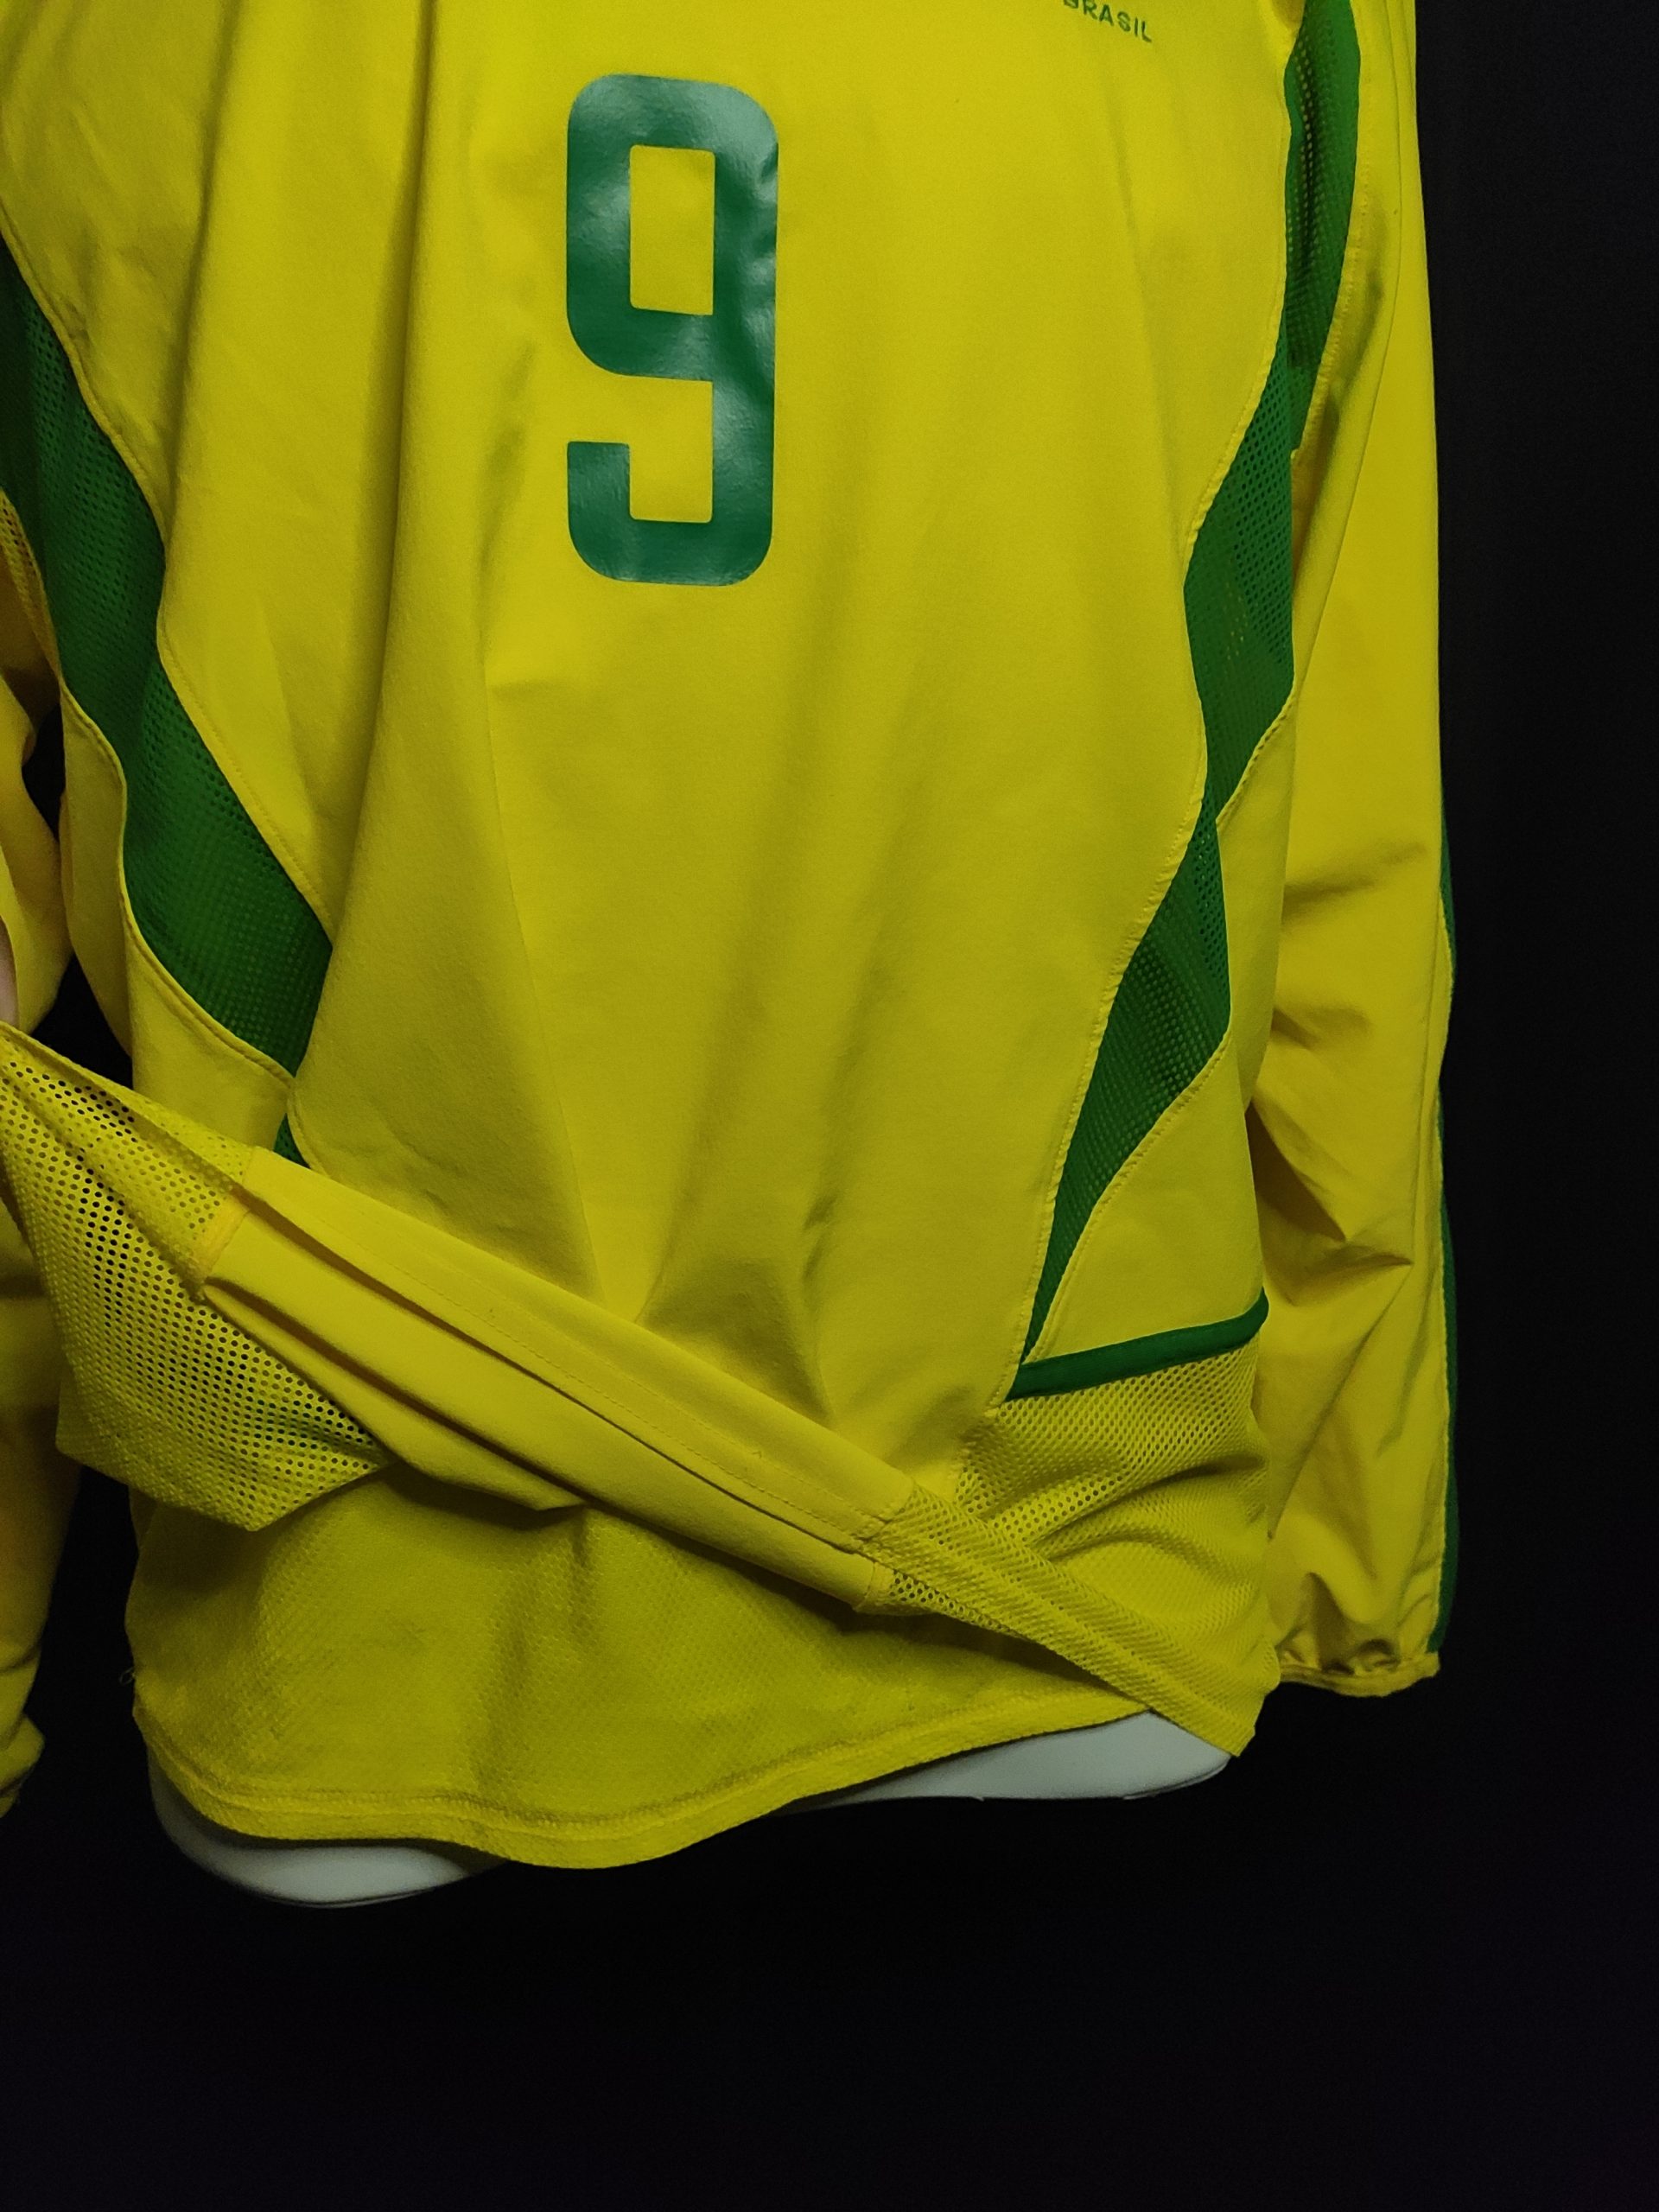 Camisa da Seleção Brasileira Oficial Manga Longa I Nike 2002 #9